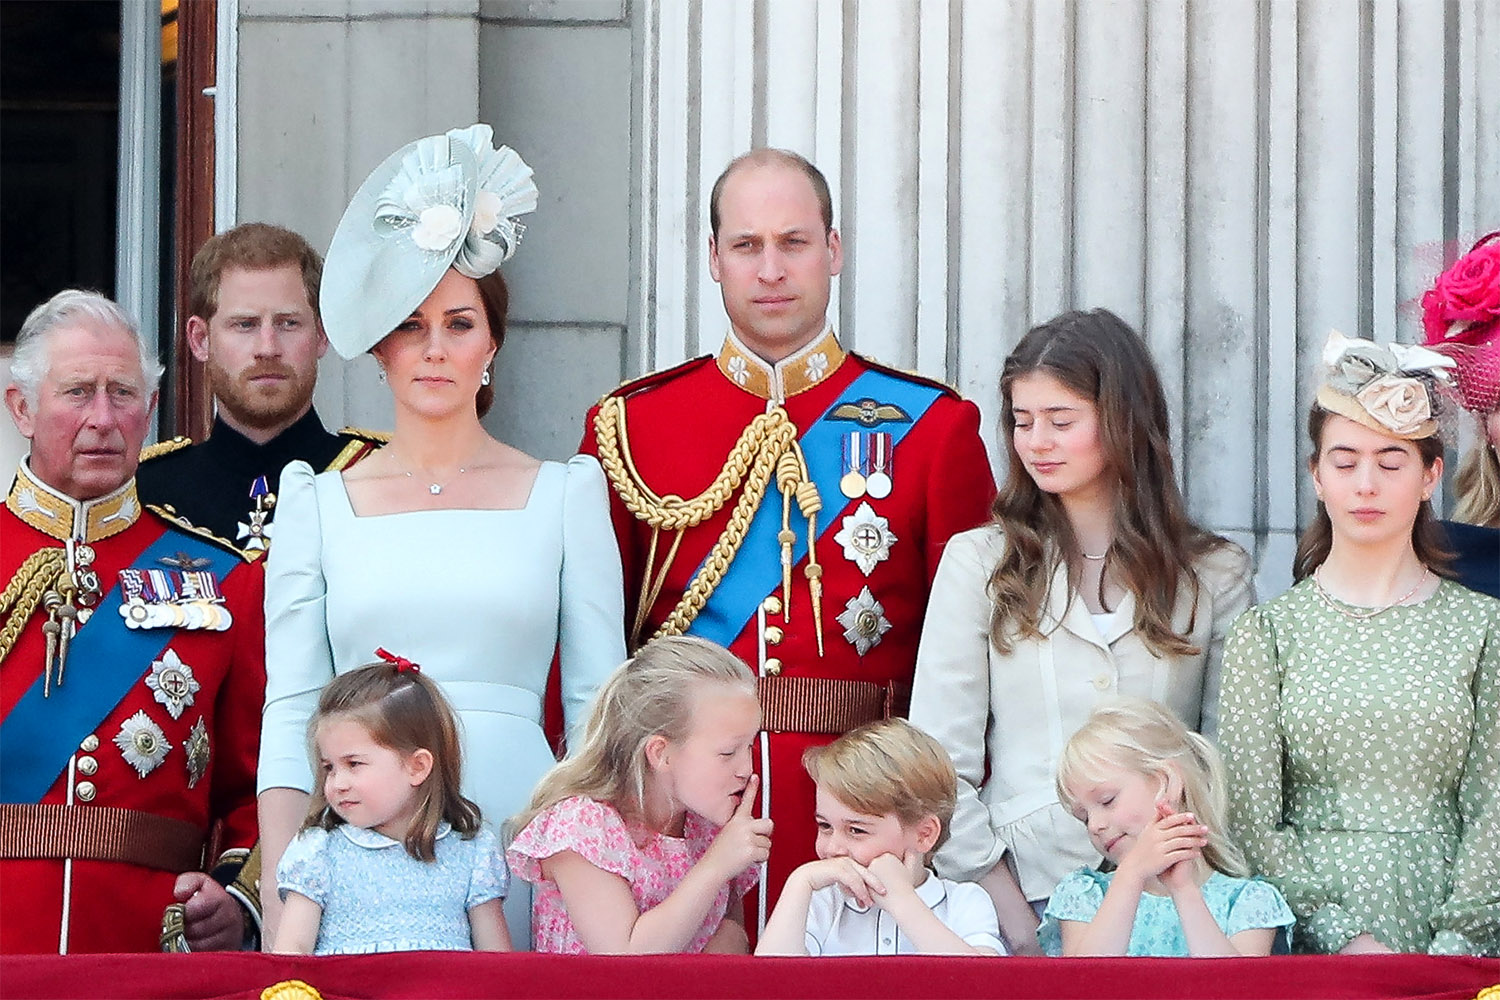 Khoảnh khắc để đời của các thành viên hoàng gia Anh khi xuất hiện trên ban công Cung điện, các con nhà Công nương Kate nổi bật nhất - Ảnh 8.